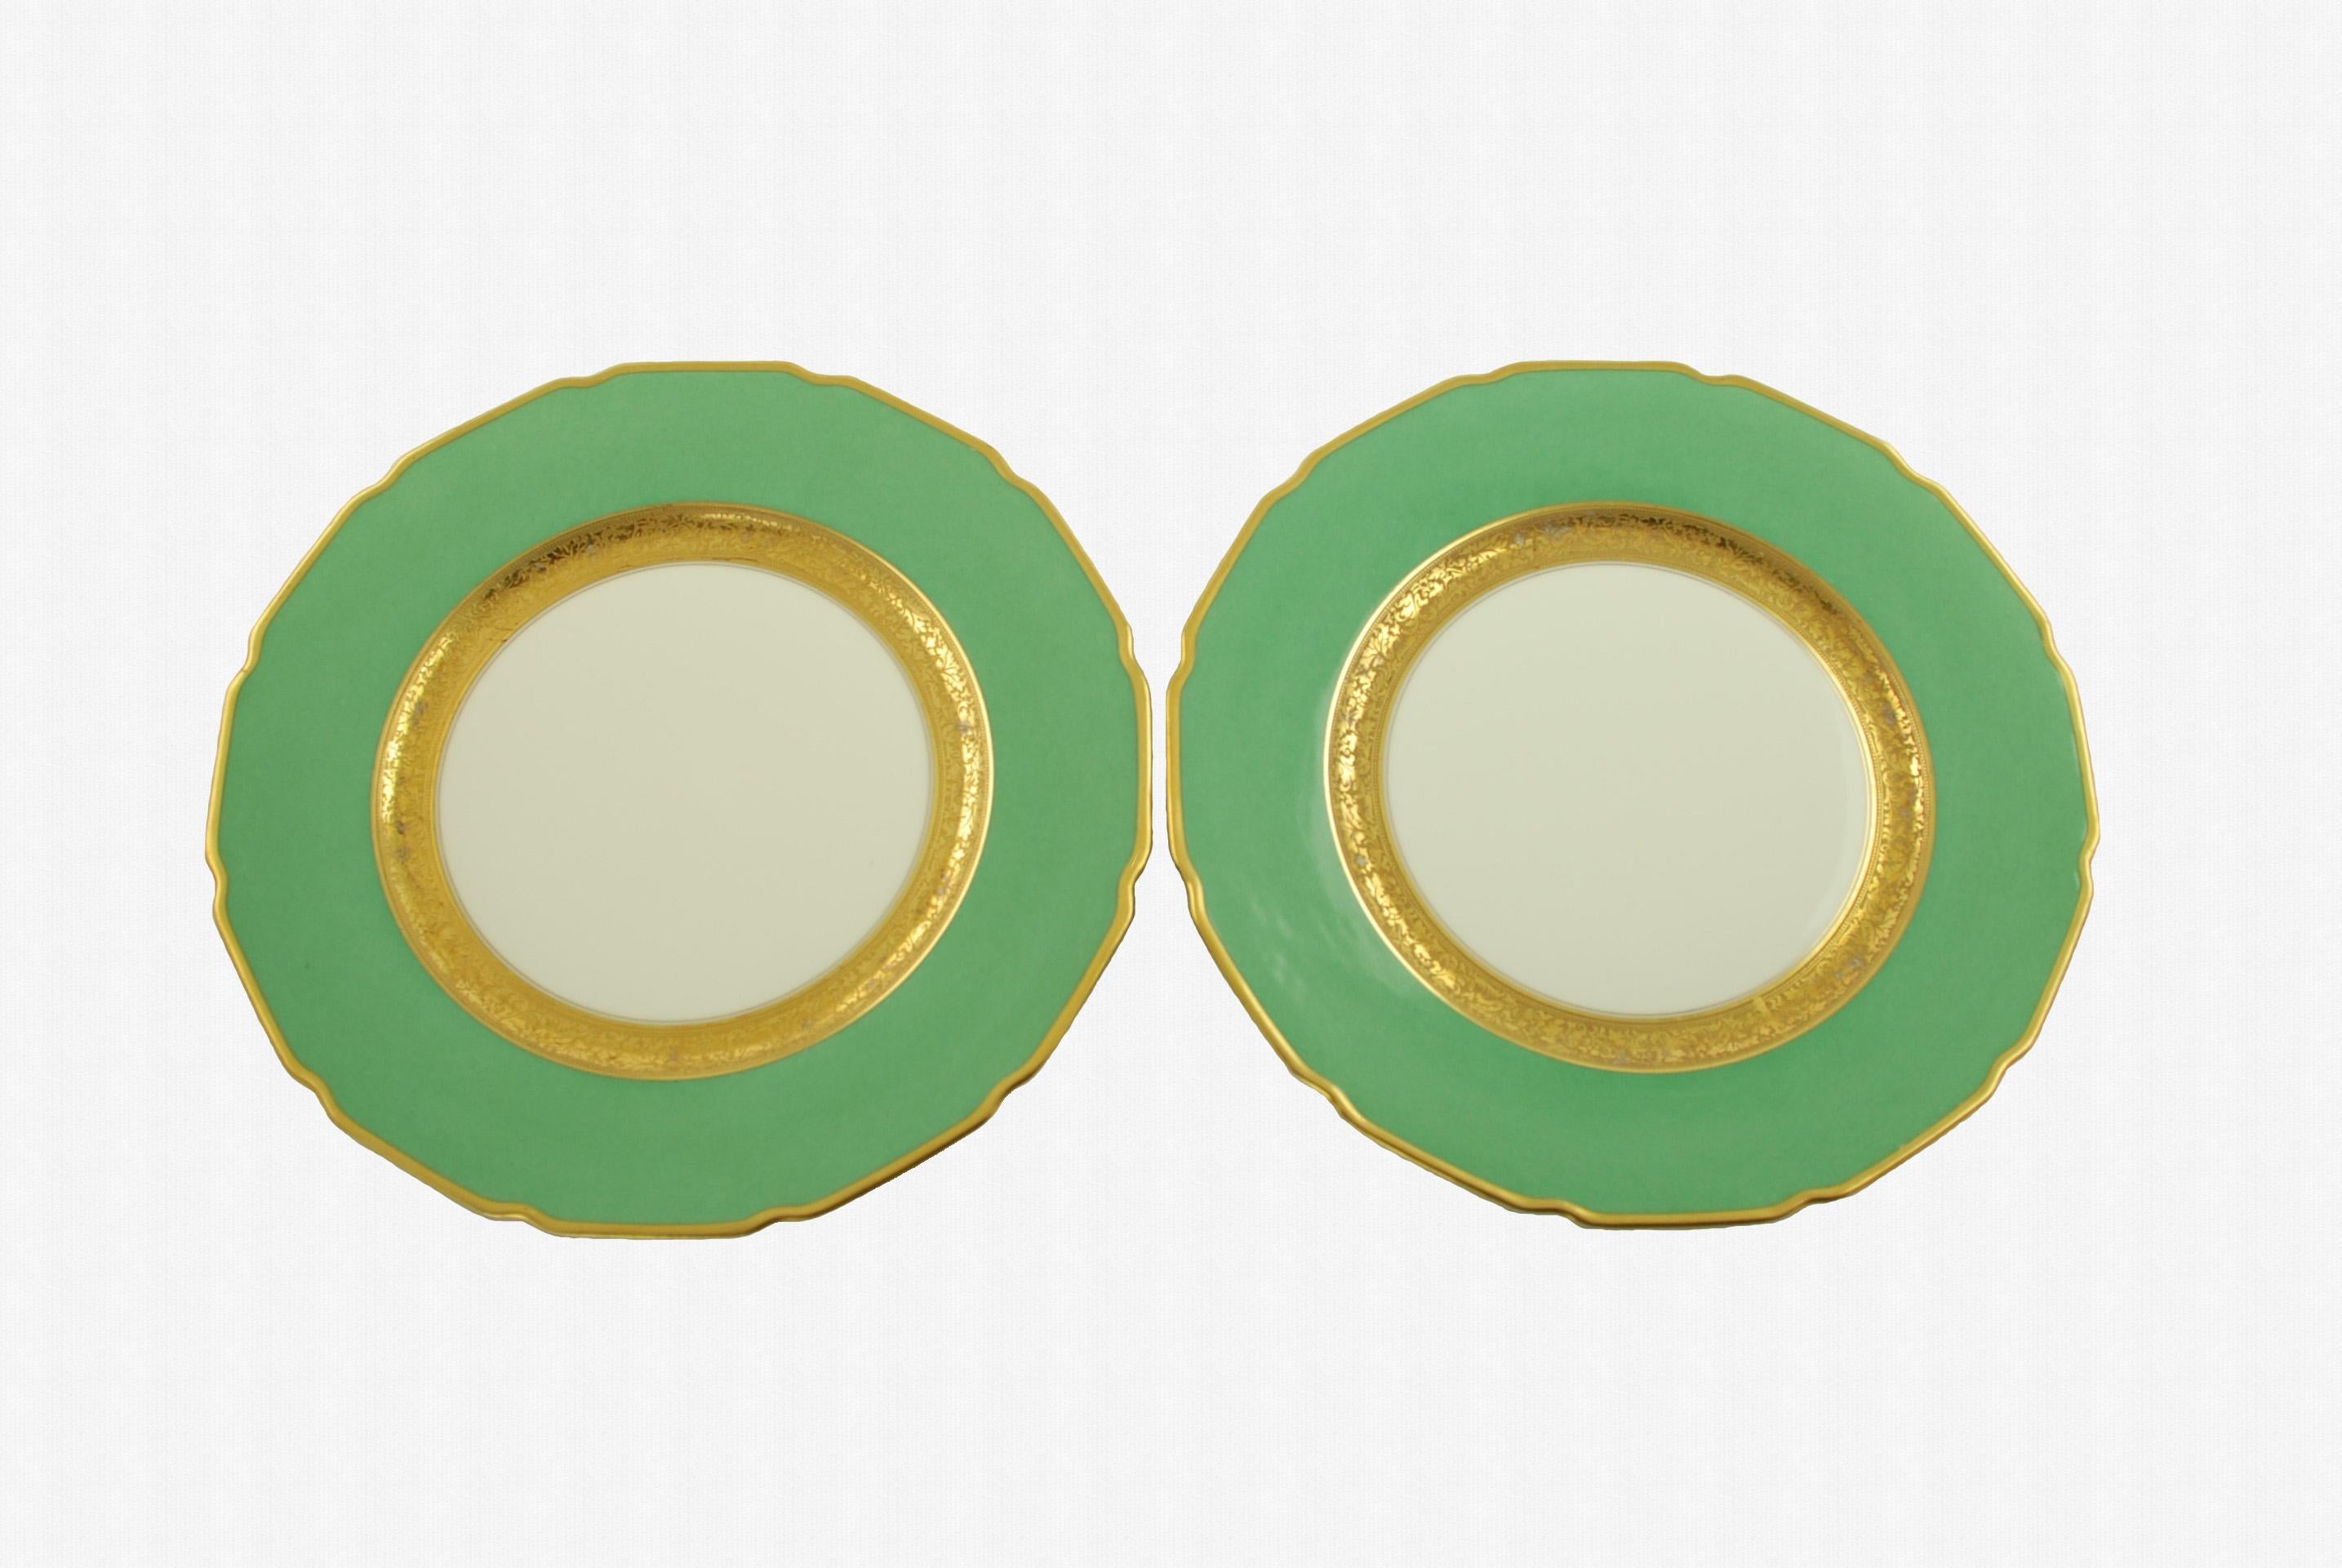 Antique Tressemanes & Vogt Porcelain Dinner Plates with Green Band and Gilt Trim 2